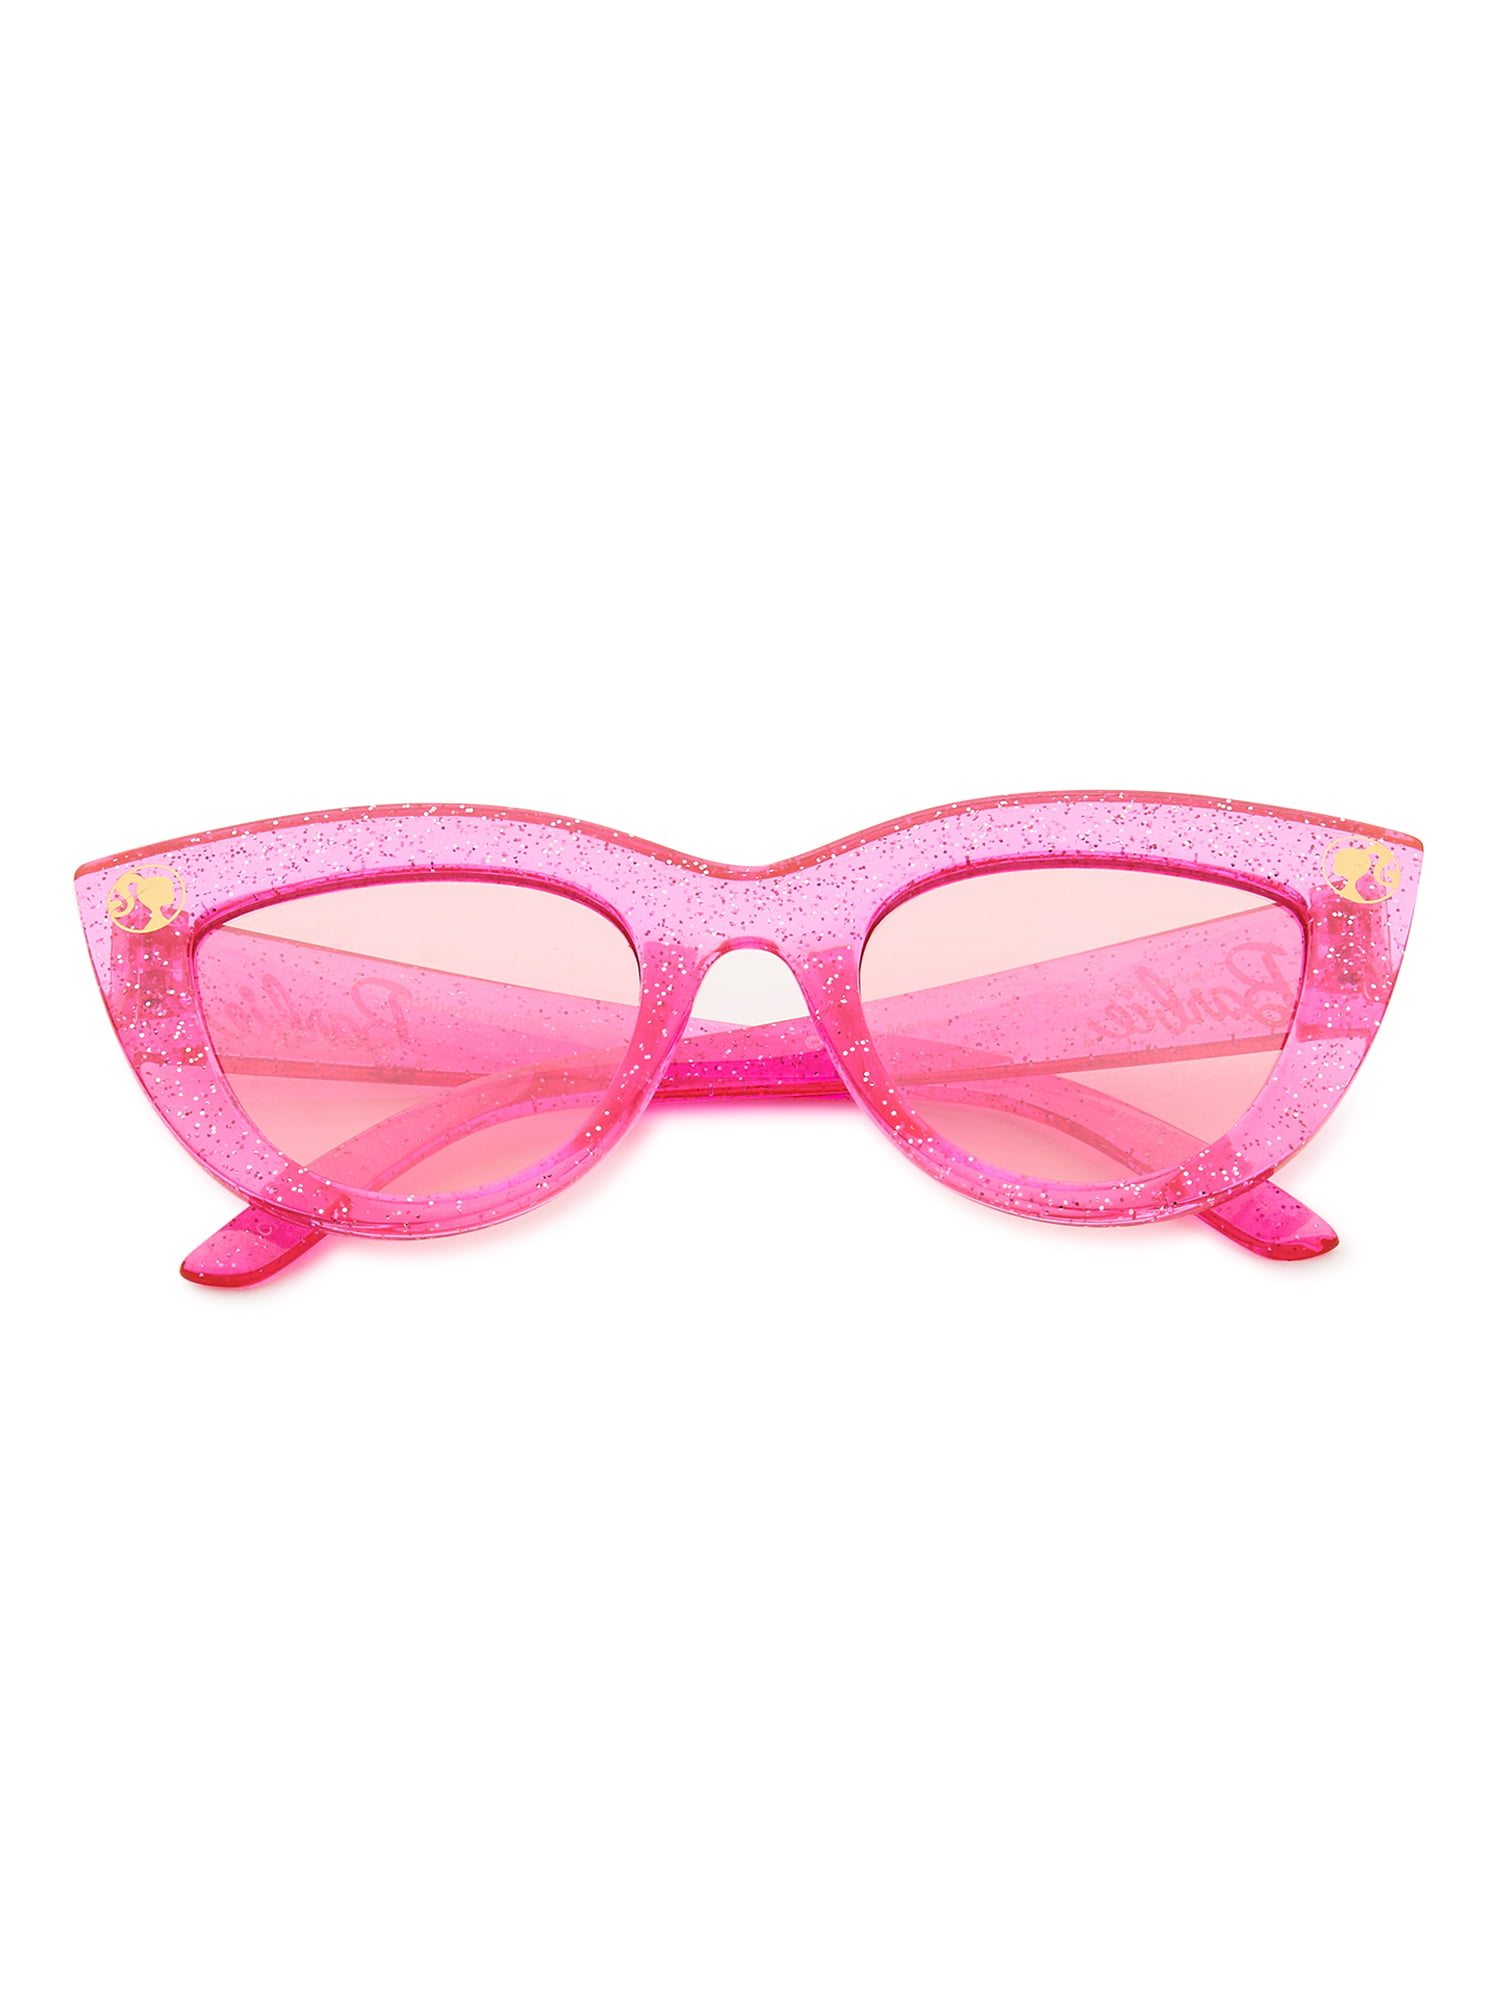 flower sunglasses toddler sunglasses Barbie Inspired Sunglasses